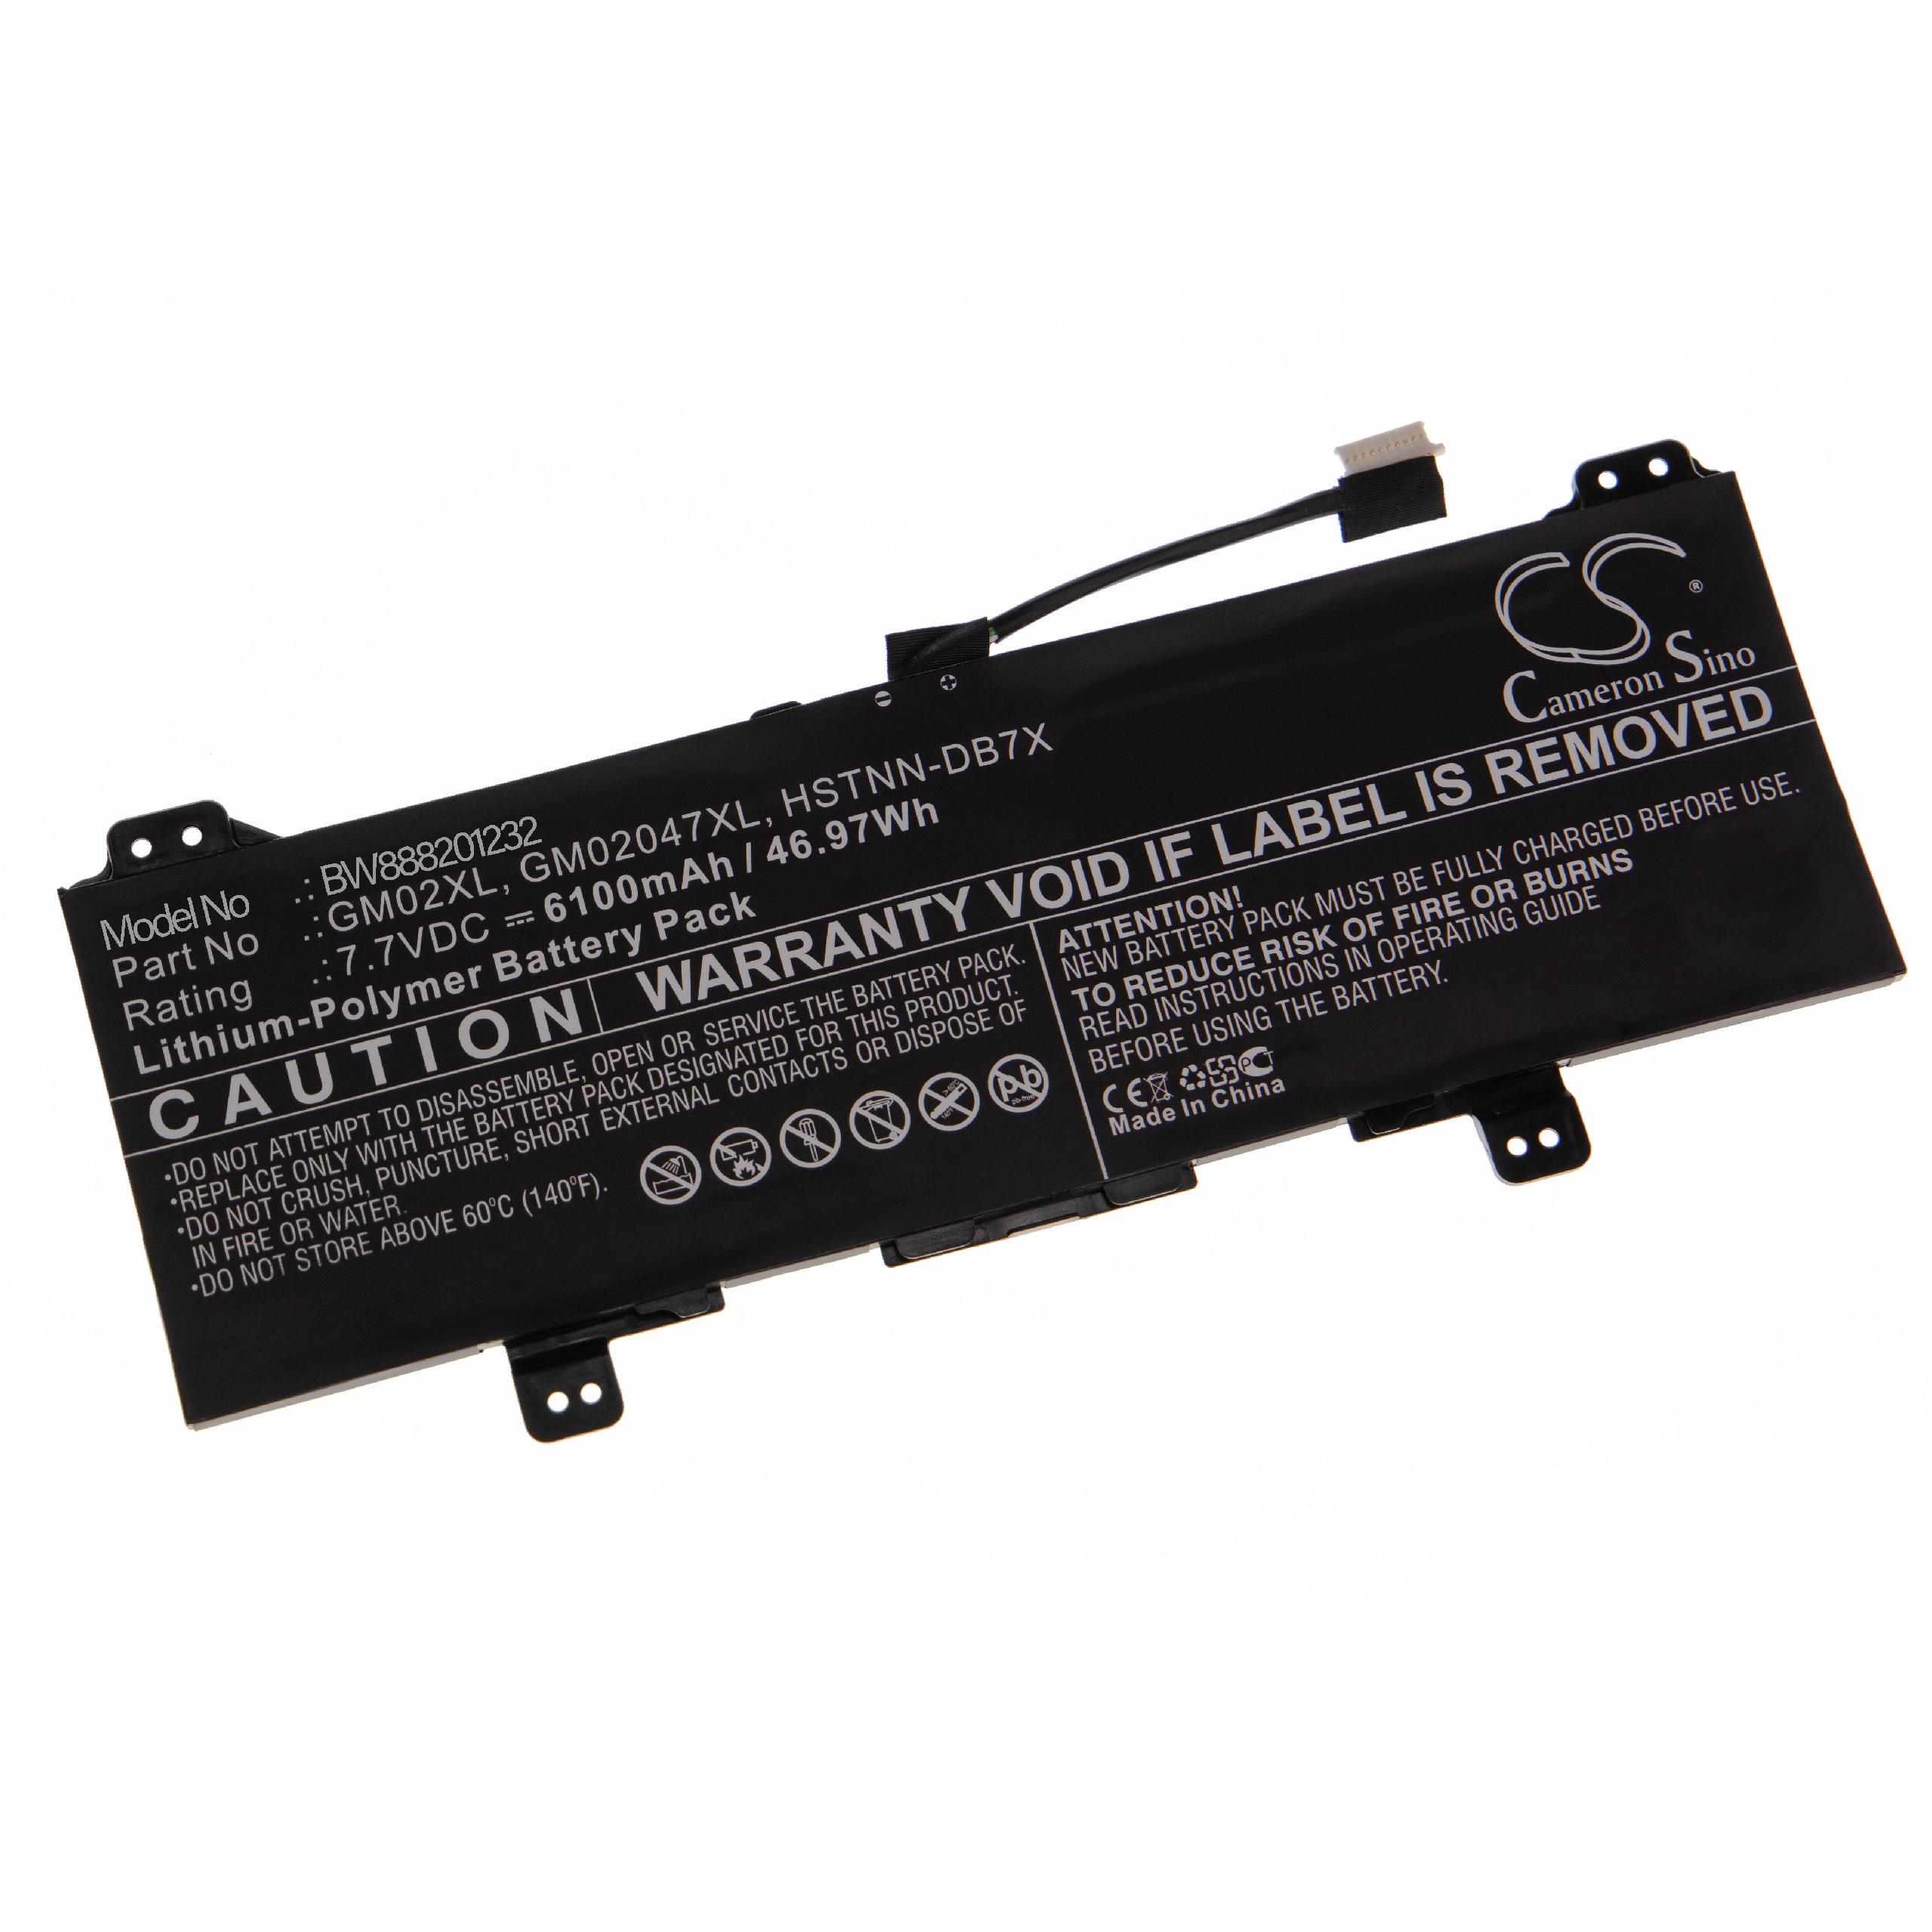 Batterie remplace HP 917679-241, 917679-271 pour ordinateur portable - 6100mAh 7,7V Li-polymère, noir